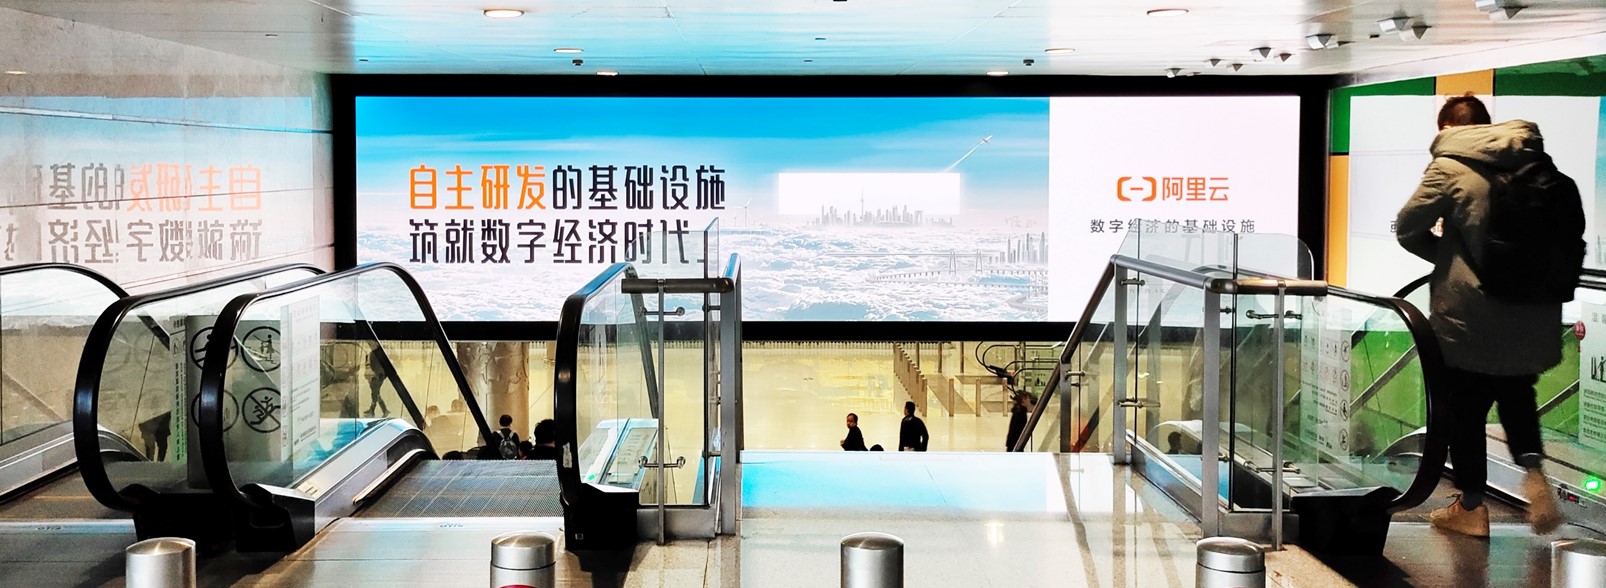 杭州萧山机场广告-T3到达扶梯口LED屏